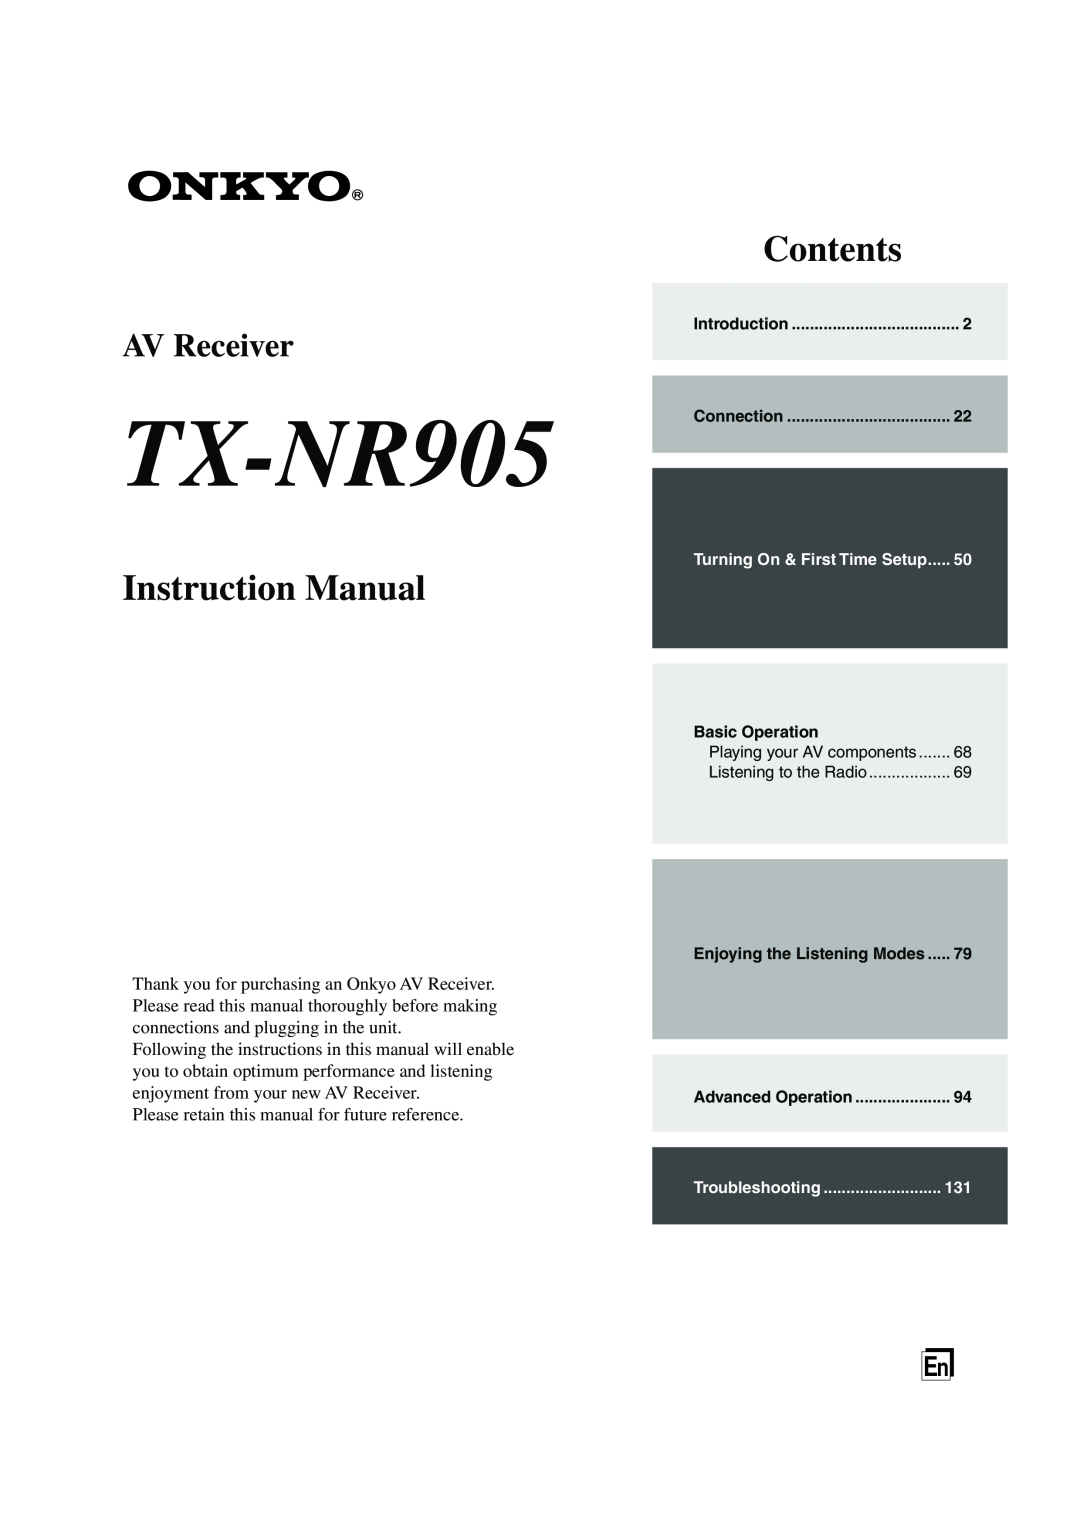 Onkyo TX-NR905 instruction manual Instruction Manual, Contents, AV Receiver 